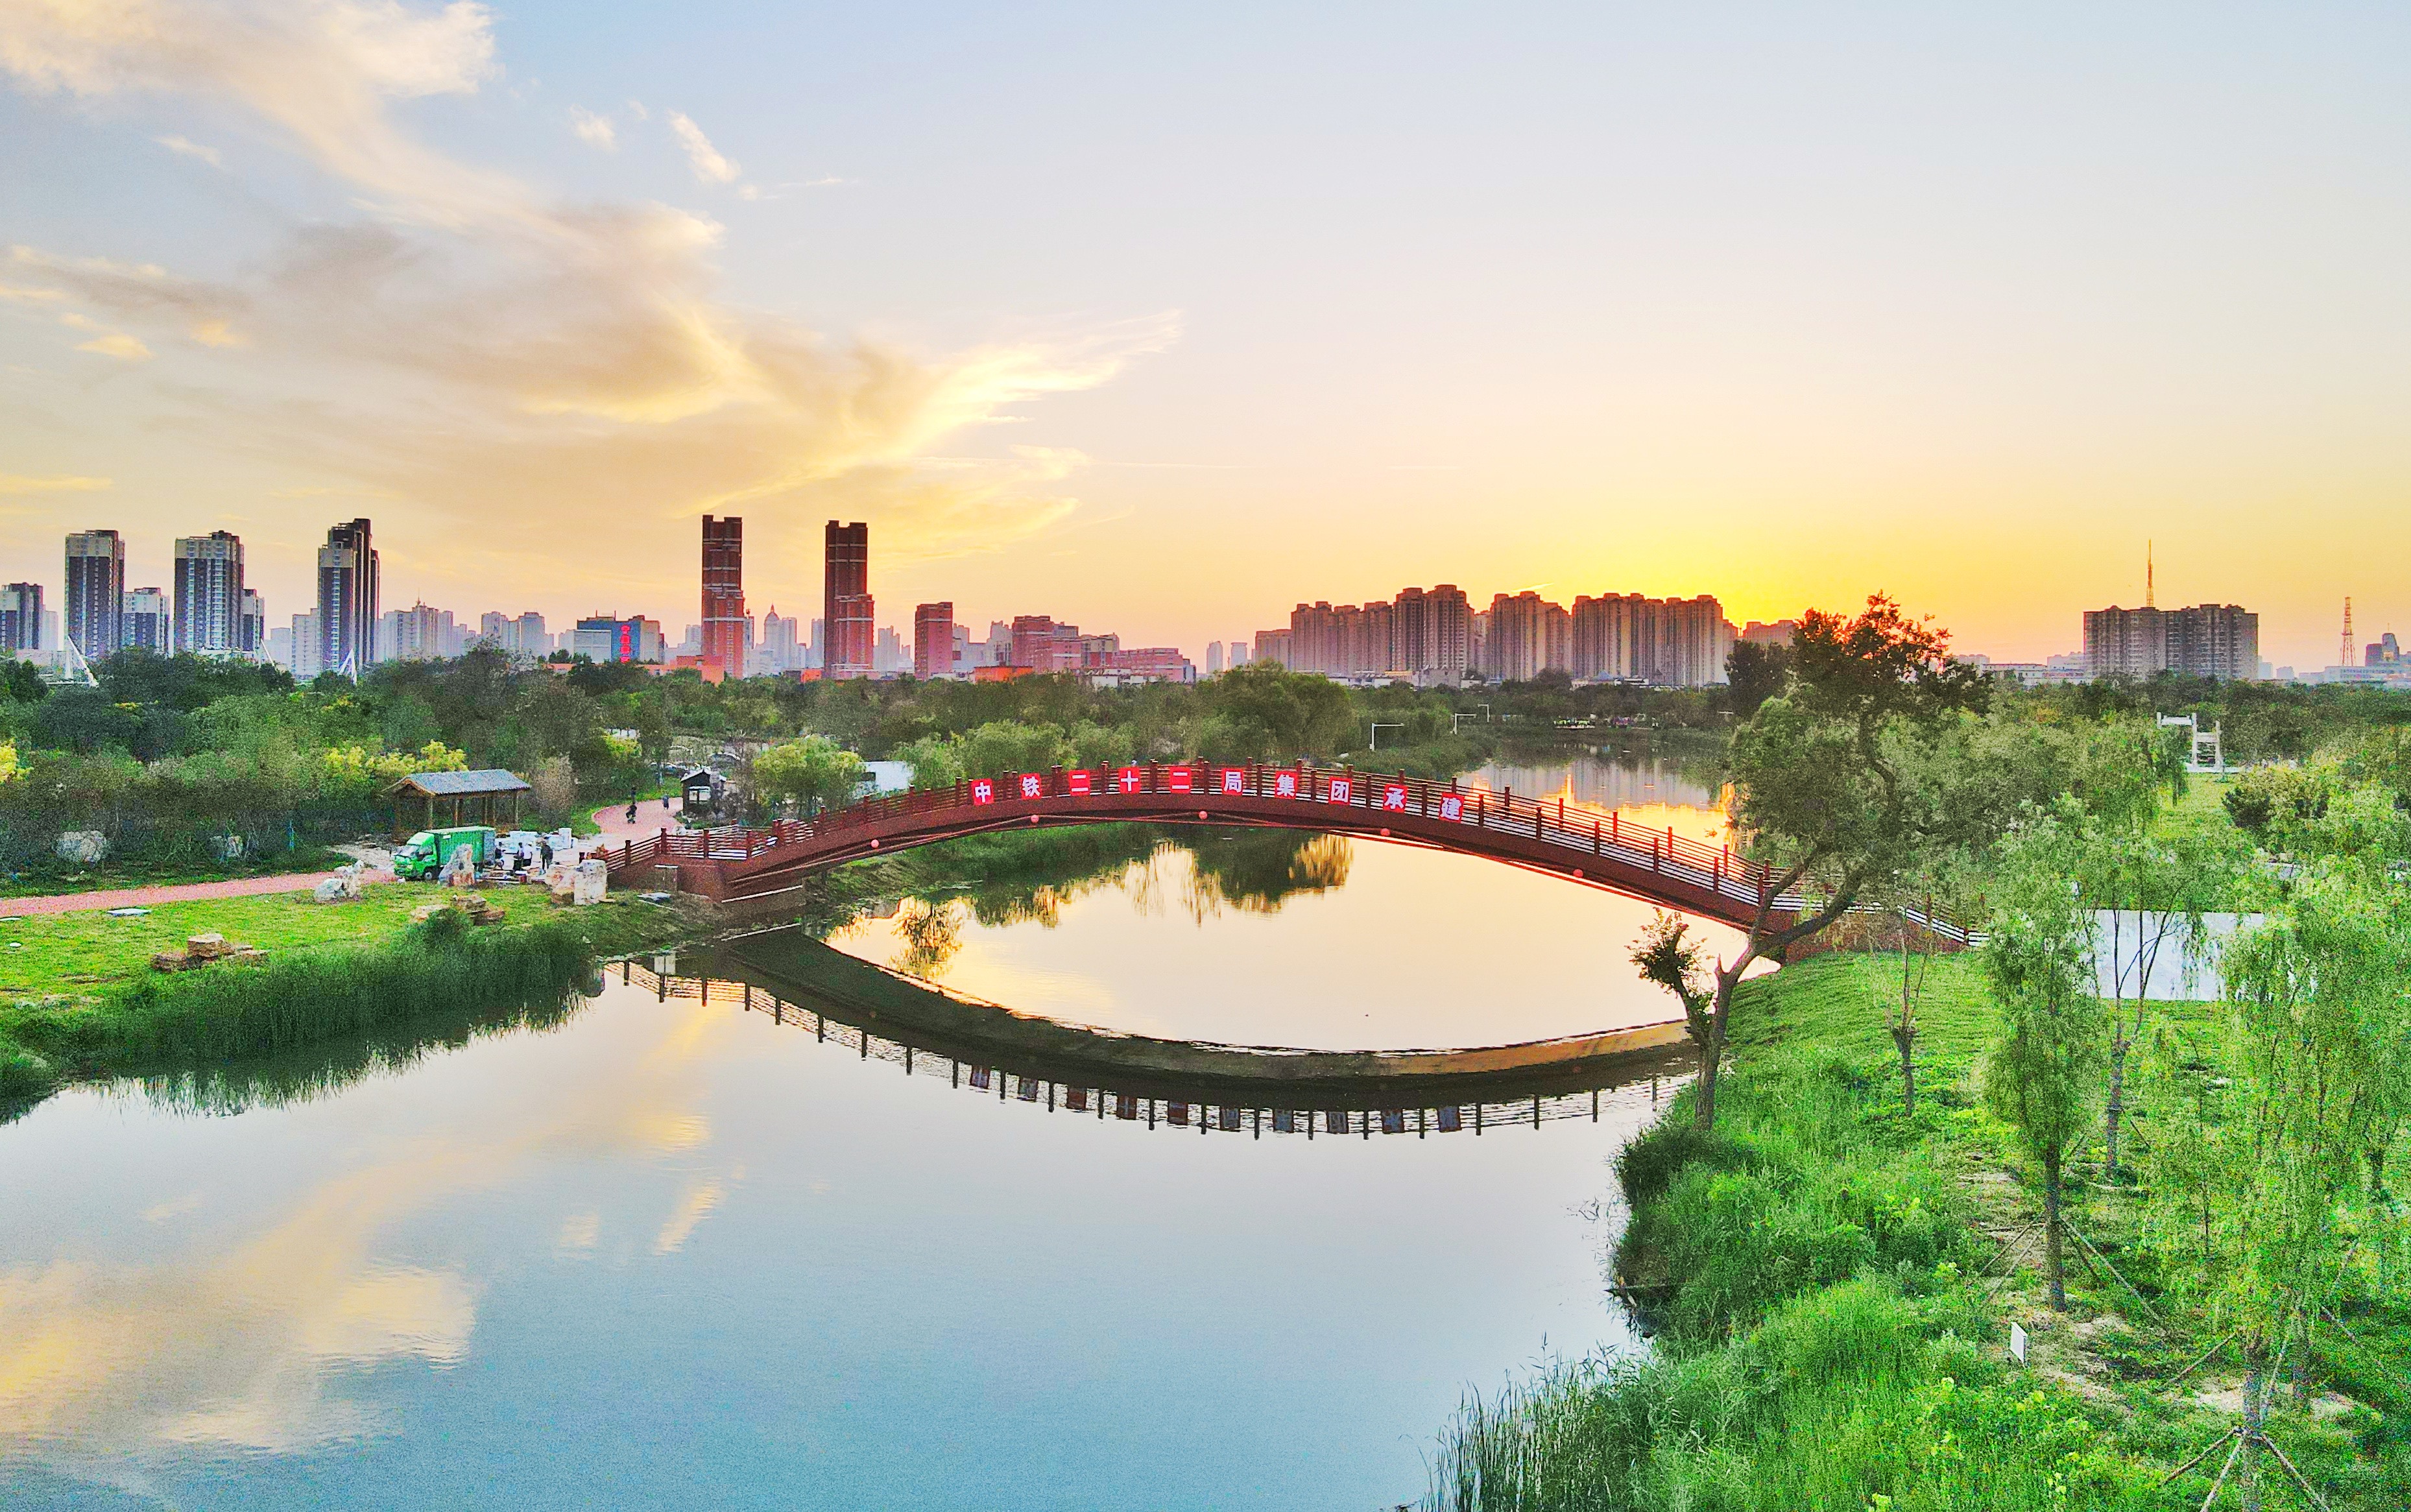 沧州运河景观带四期图片